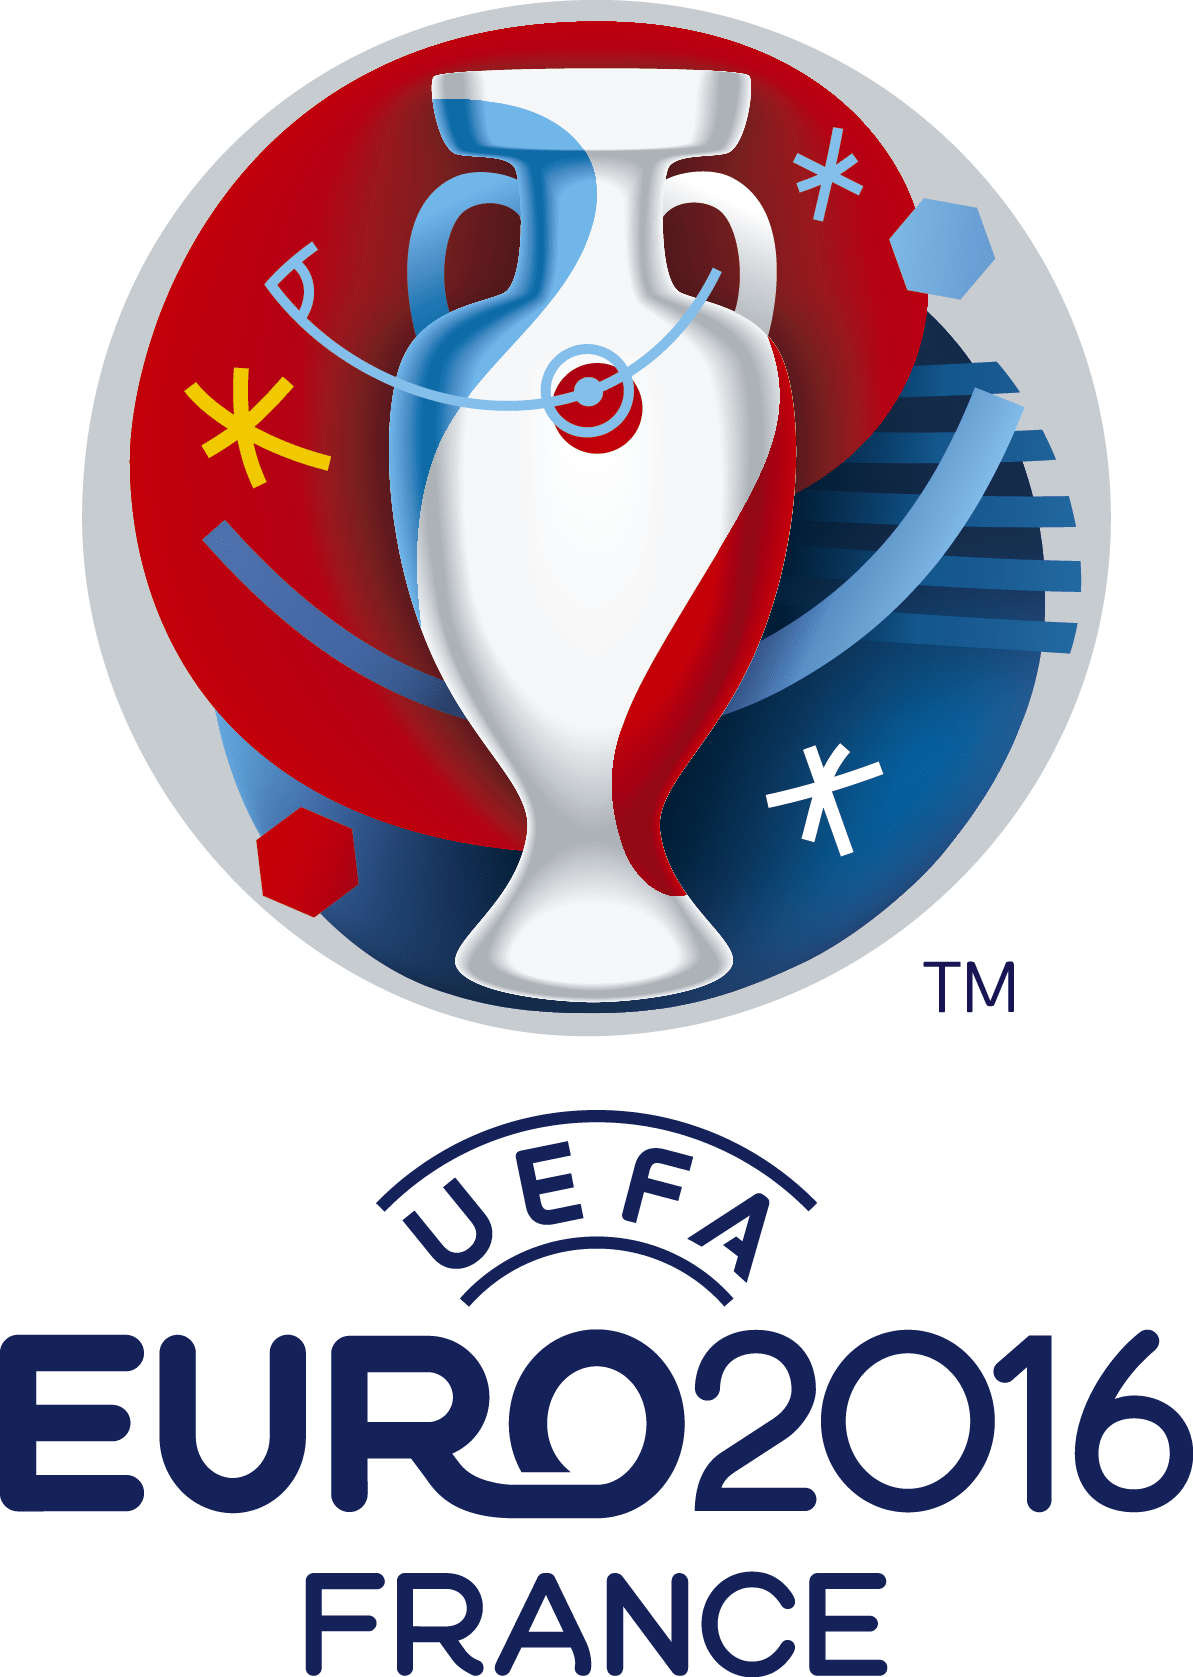 Références - Logo de la coupe d'Europe de football de 2016 organisée par l'UEFA